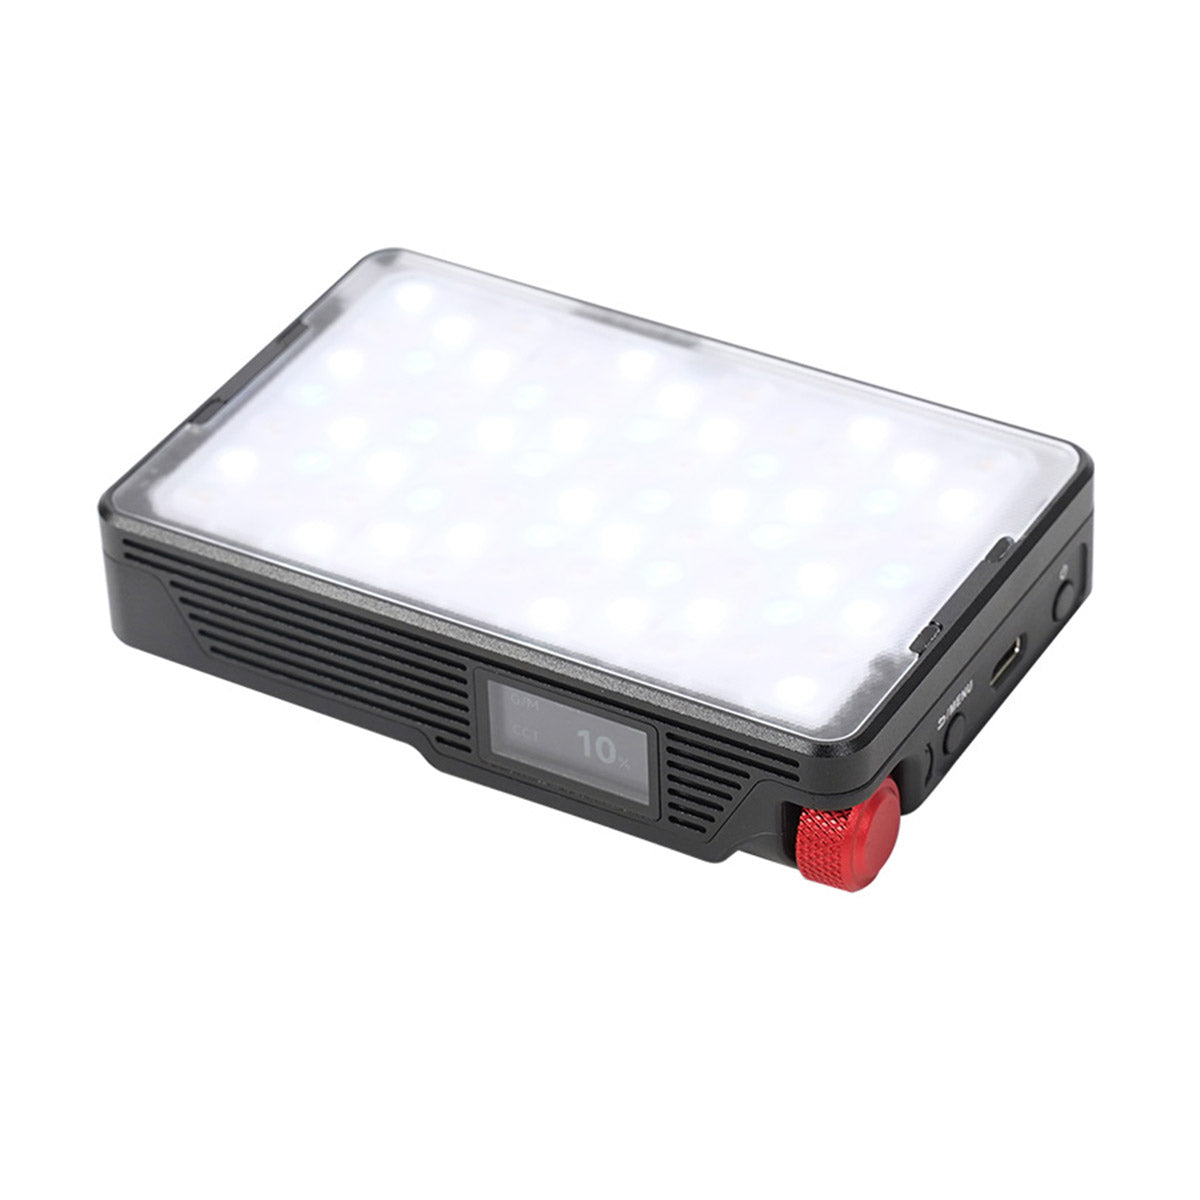 Aputure MC Pro RGB Portable 8-Light Kit